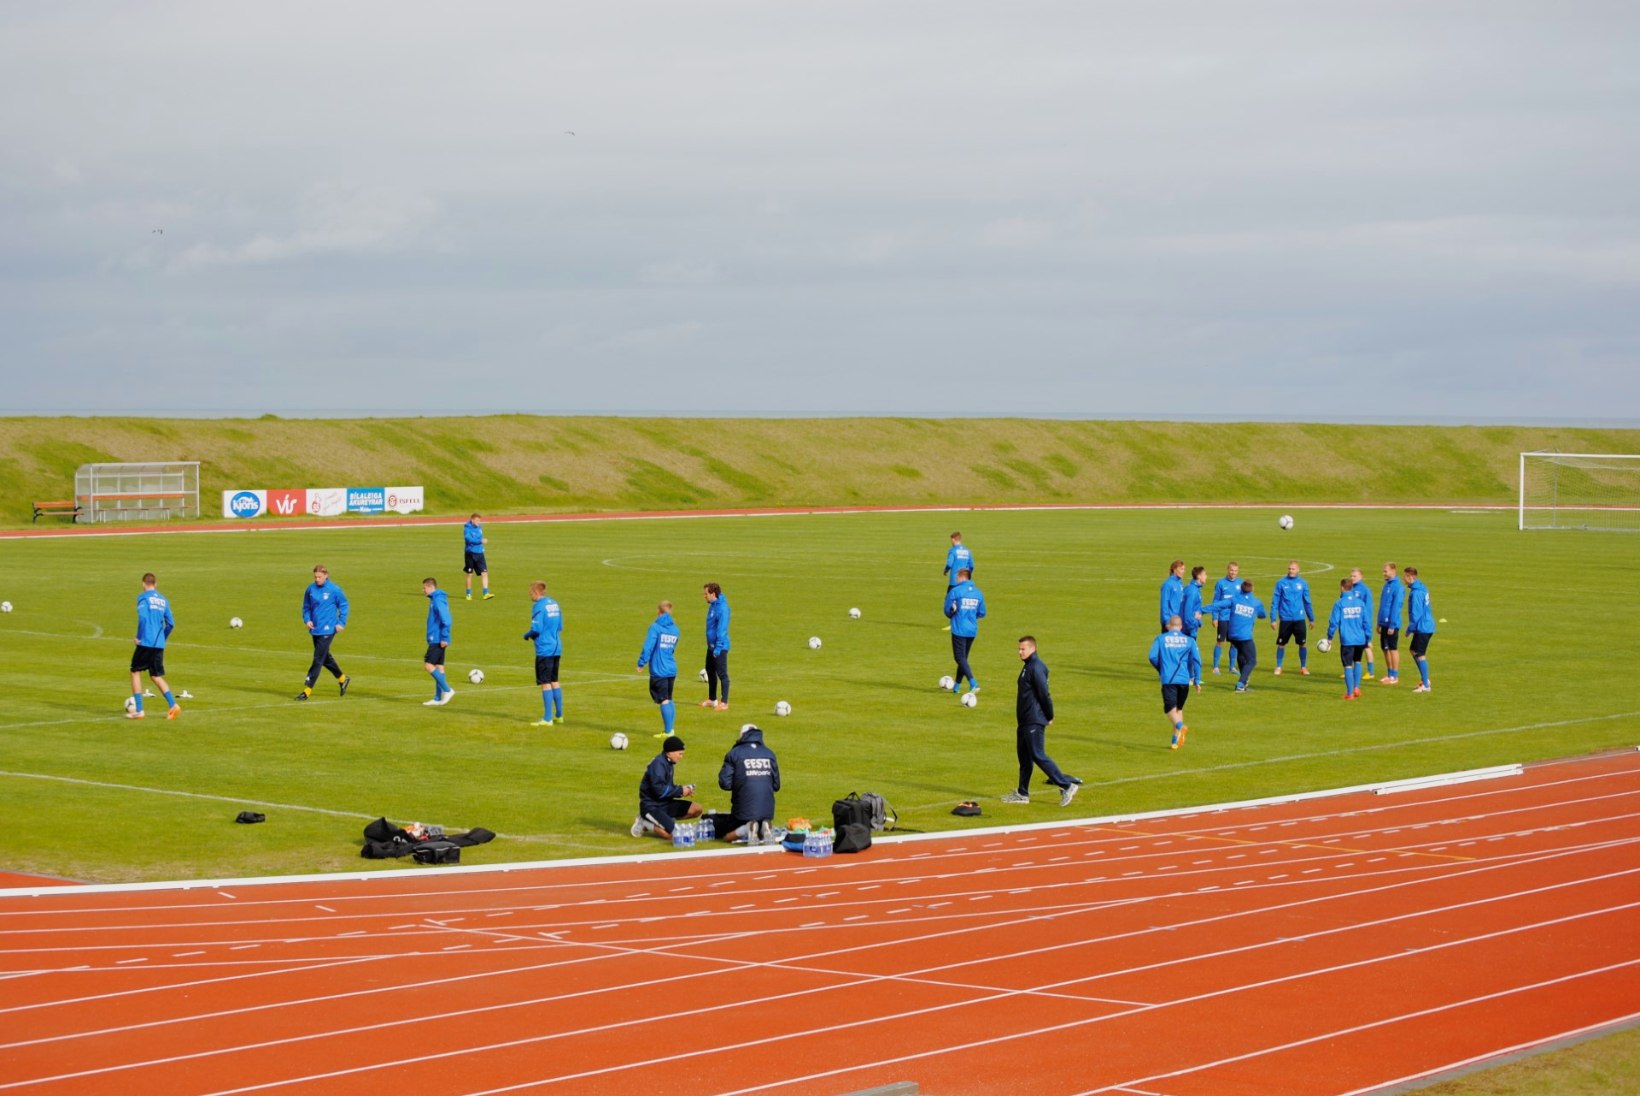 FOTOD: Eesti jalgpallikoondis valmistub heitluseks Islandiga